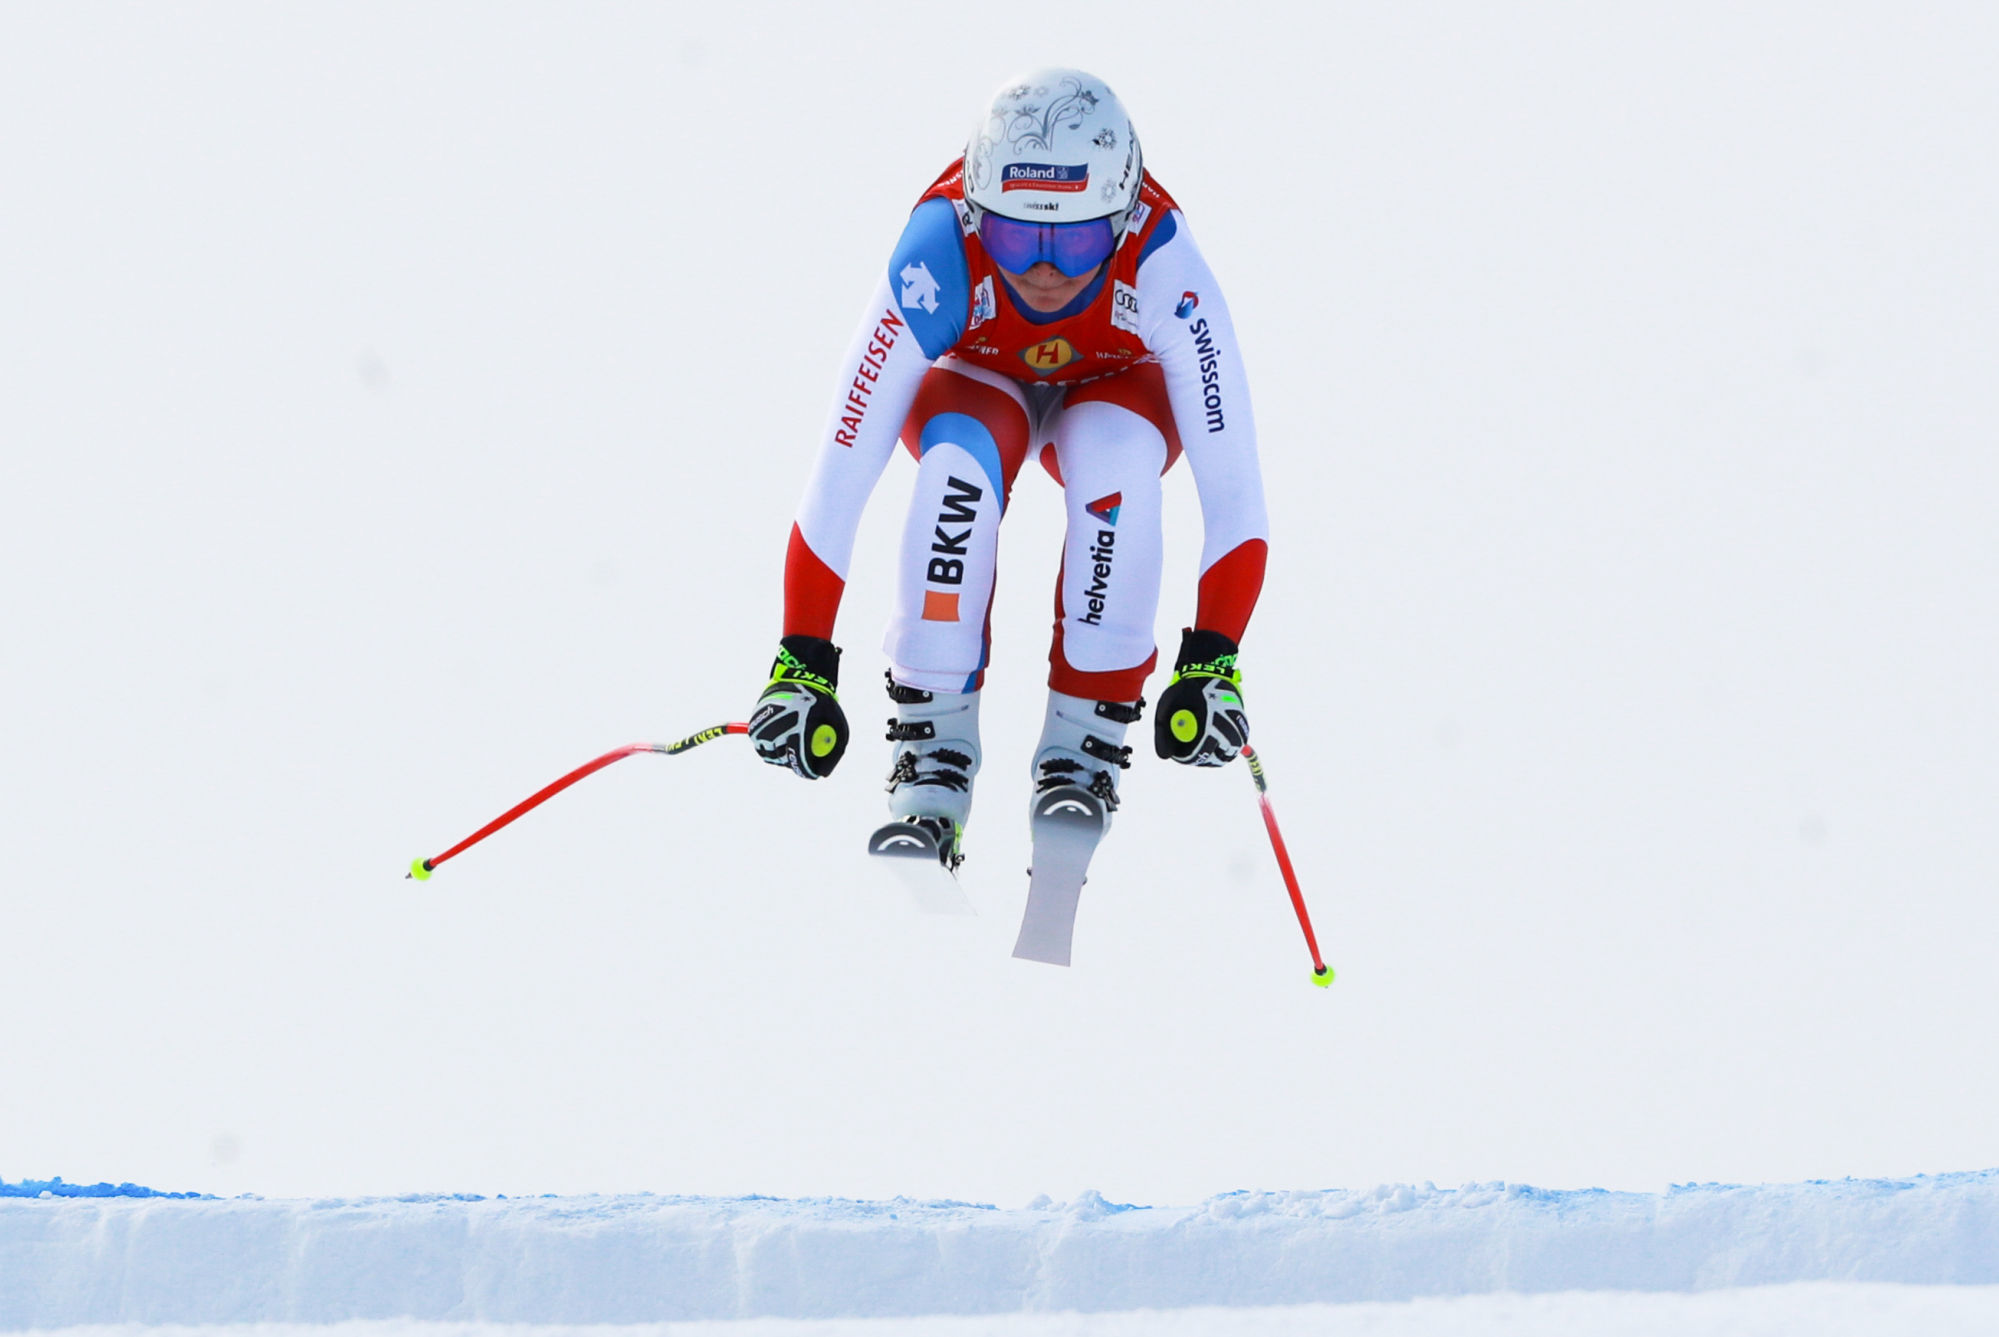 Ski alpin dames - Corinne Suter (SUI). Photo: GEPA pictures/ Andreas Pranter / Icon Sport